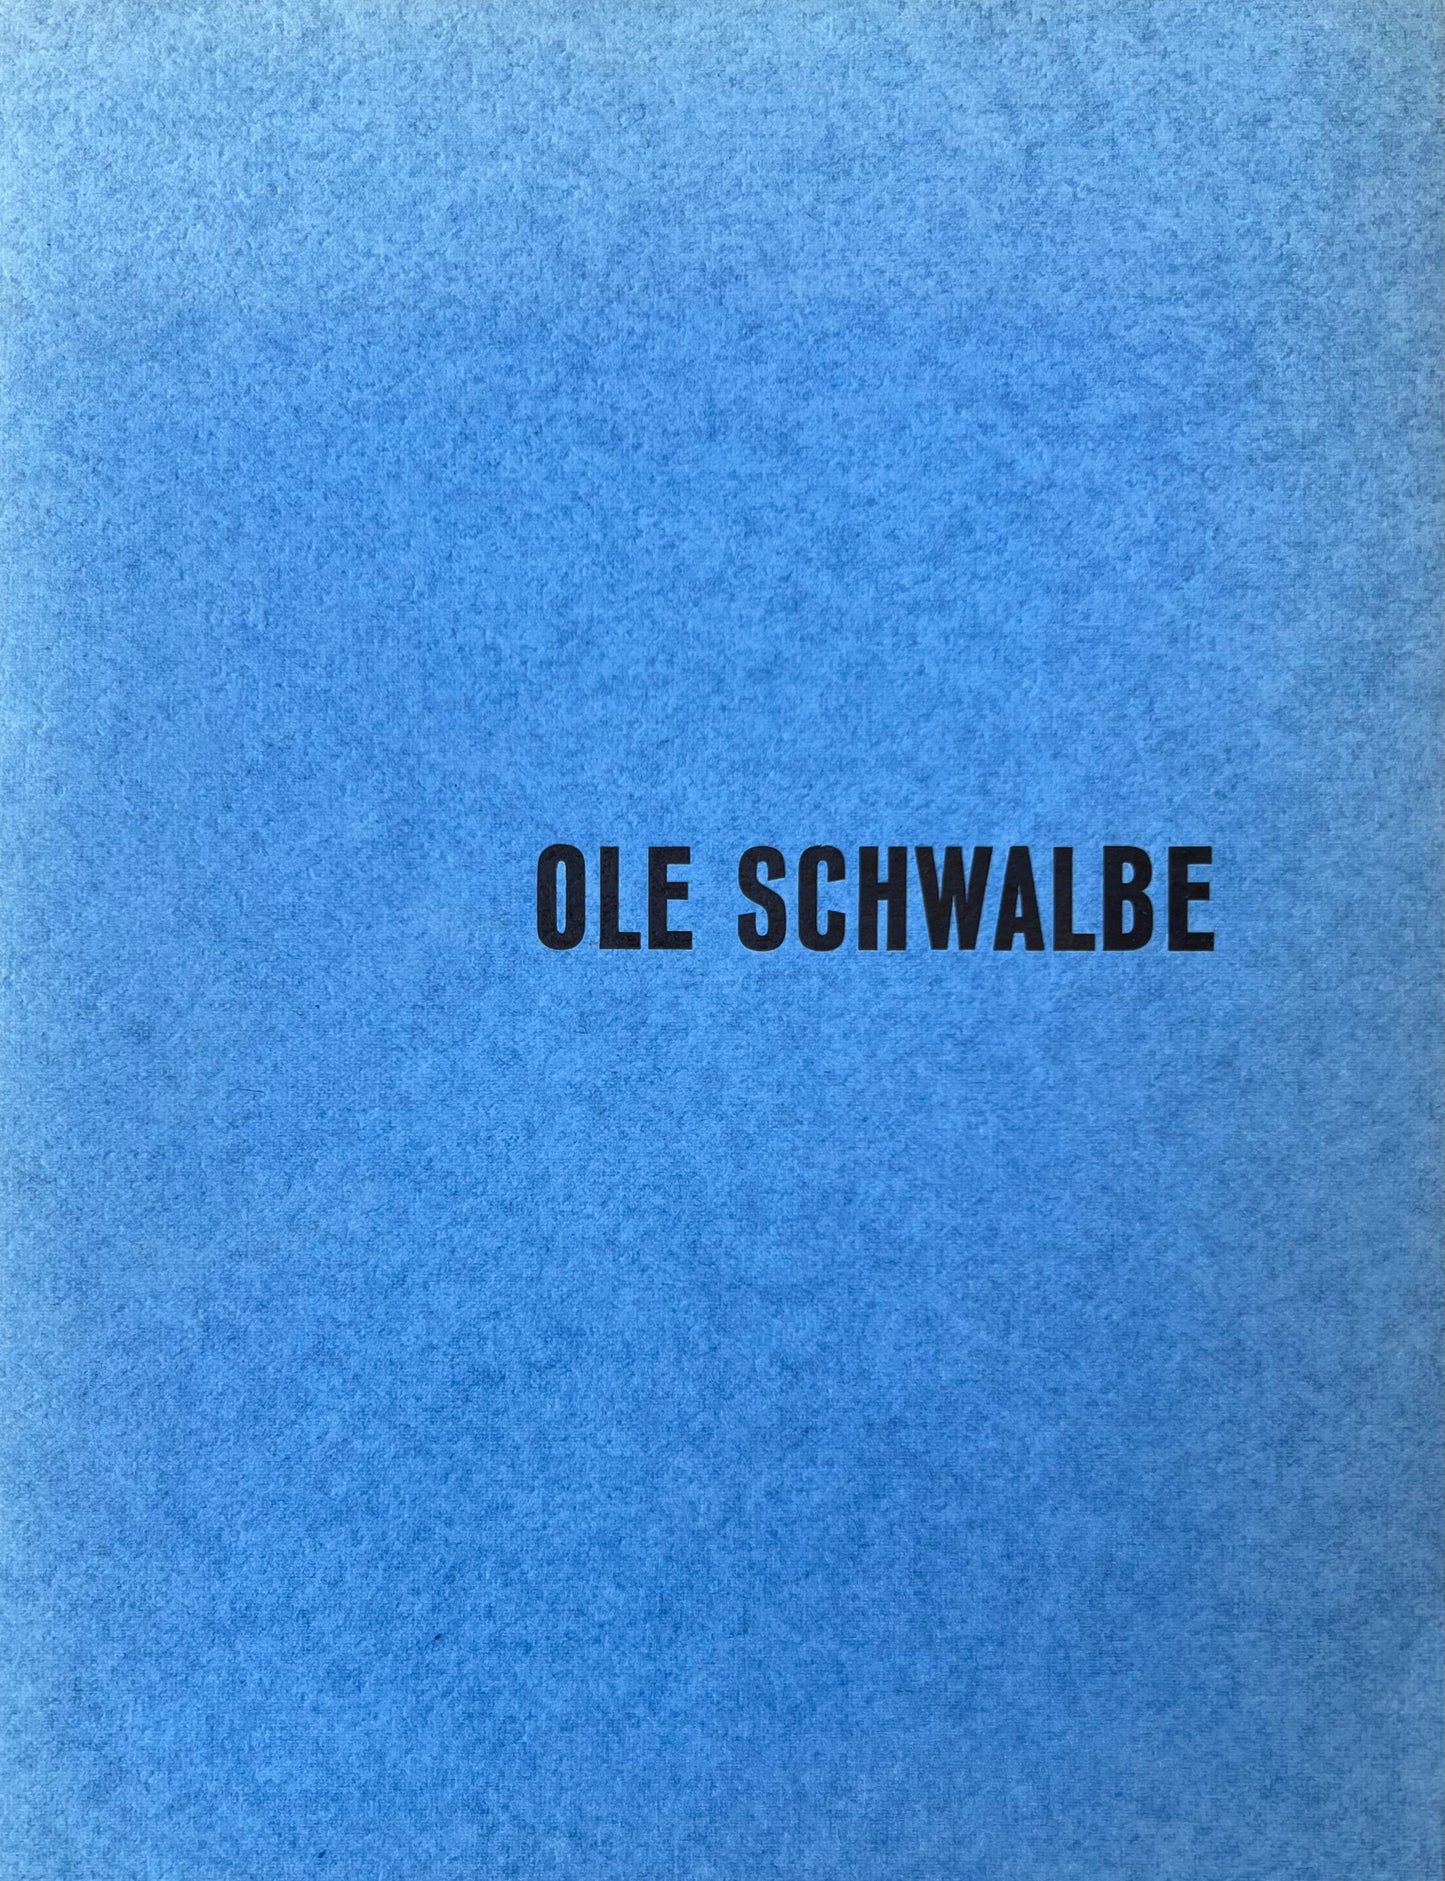 Gallery Børge Birch. "Ole Schwalbe", 1955-1960